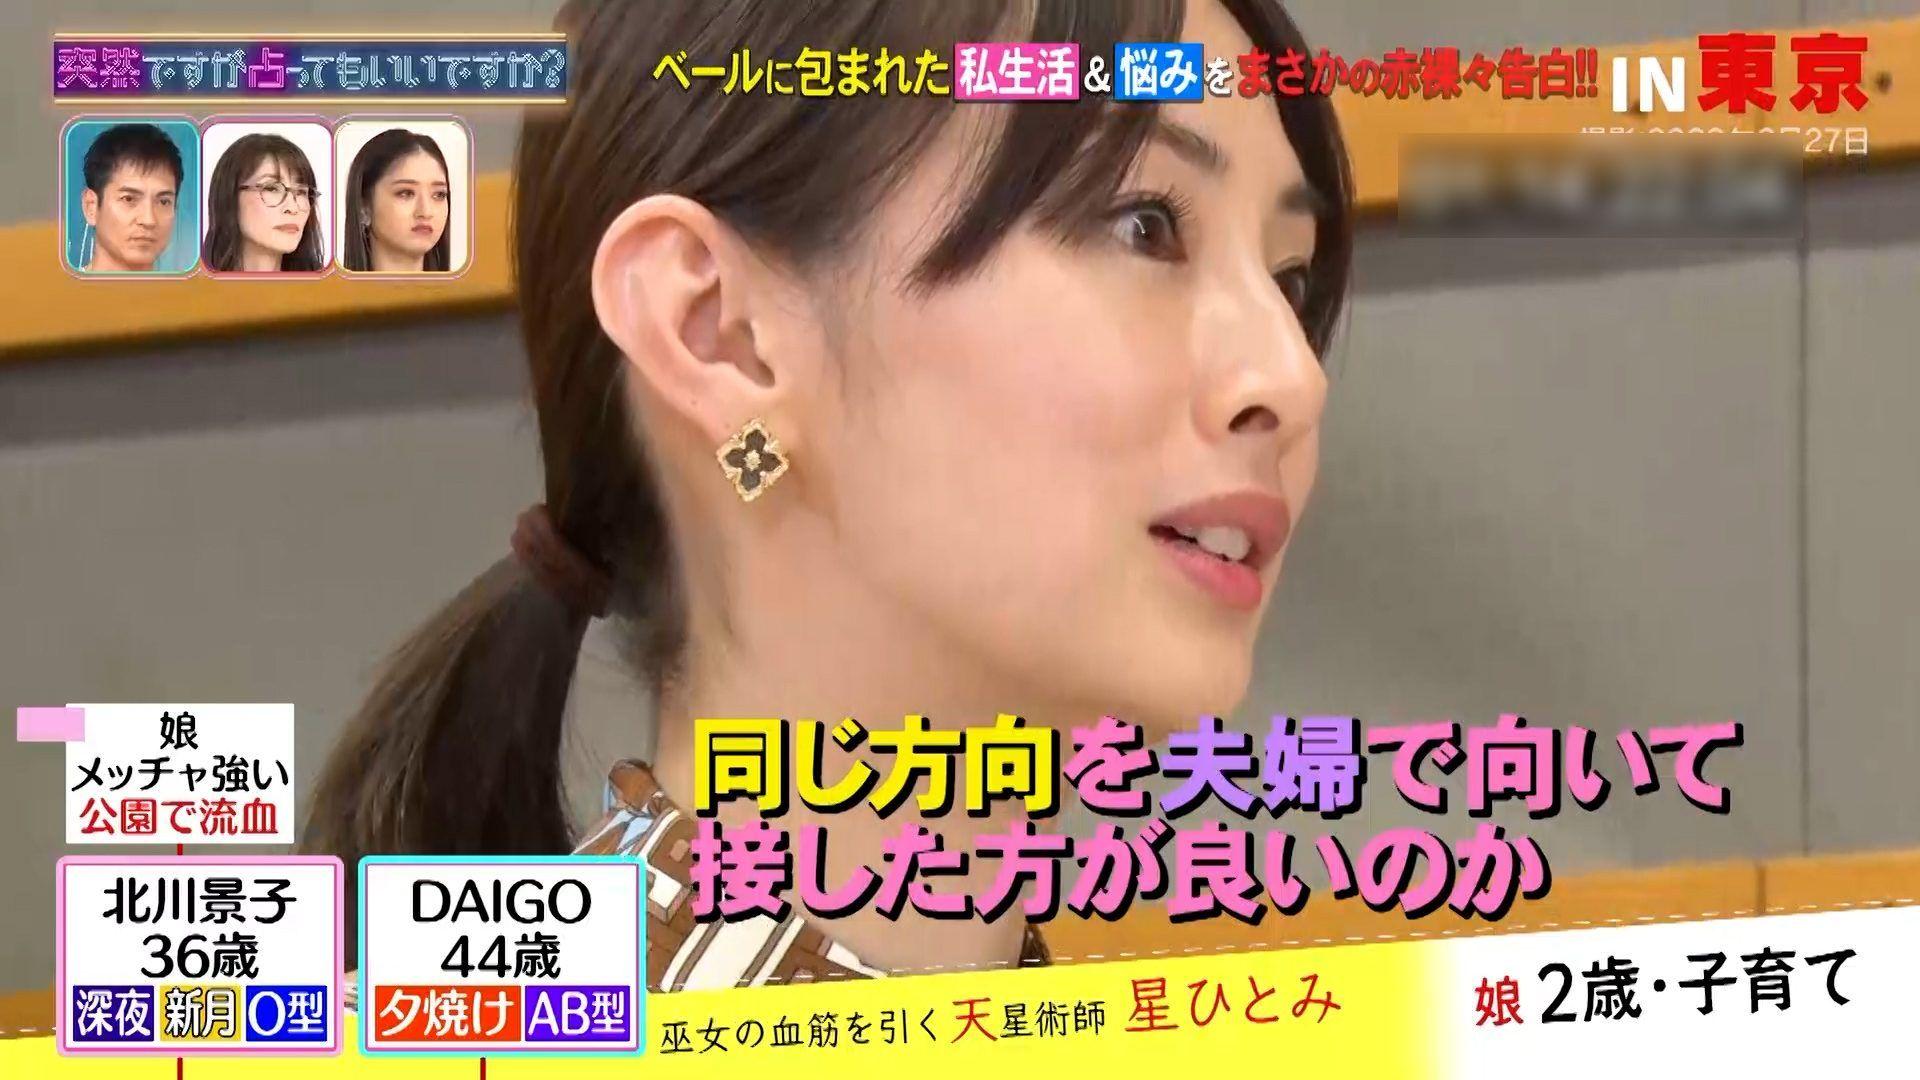 北川景子 DAIGOと正反対の育児方針に「同じ方向を向いたほうがいいか迷っている」